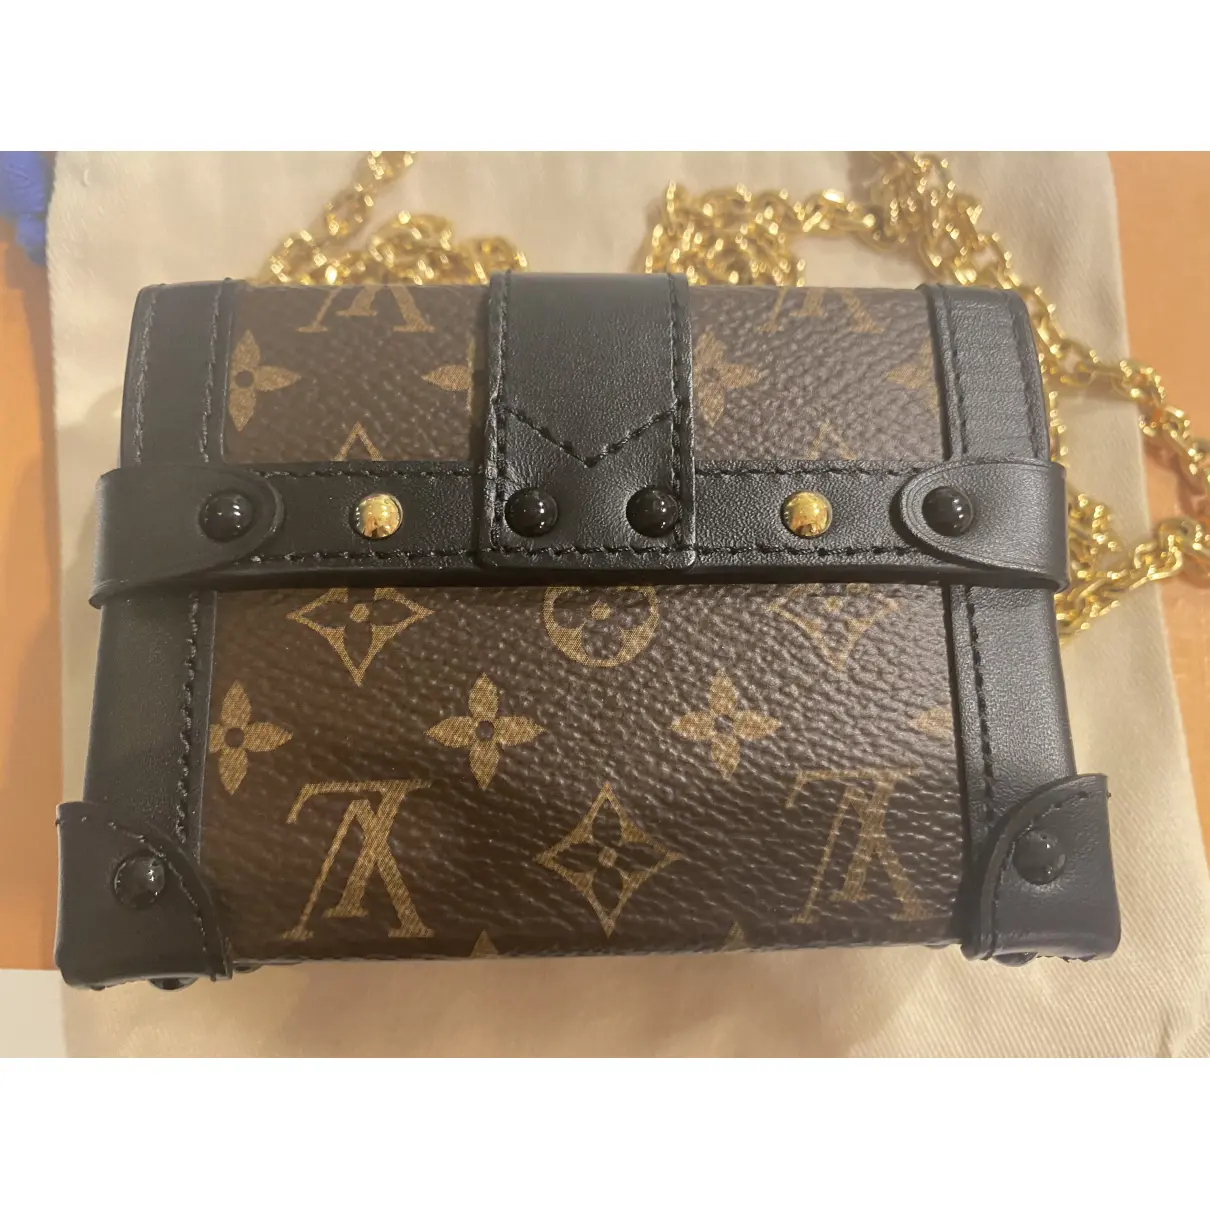 Buy Louis Vuitton Petite Malle leather handbag online